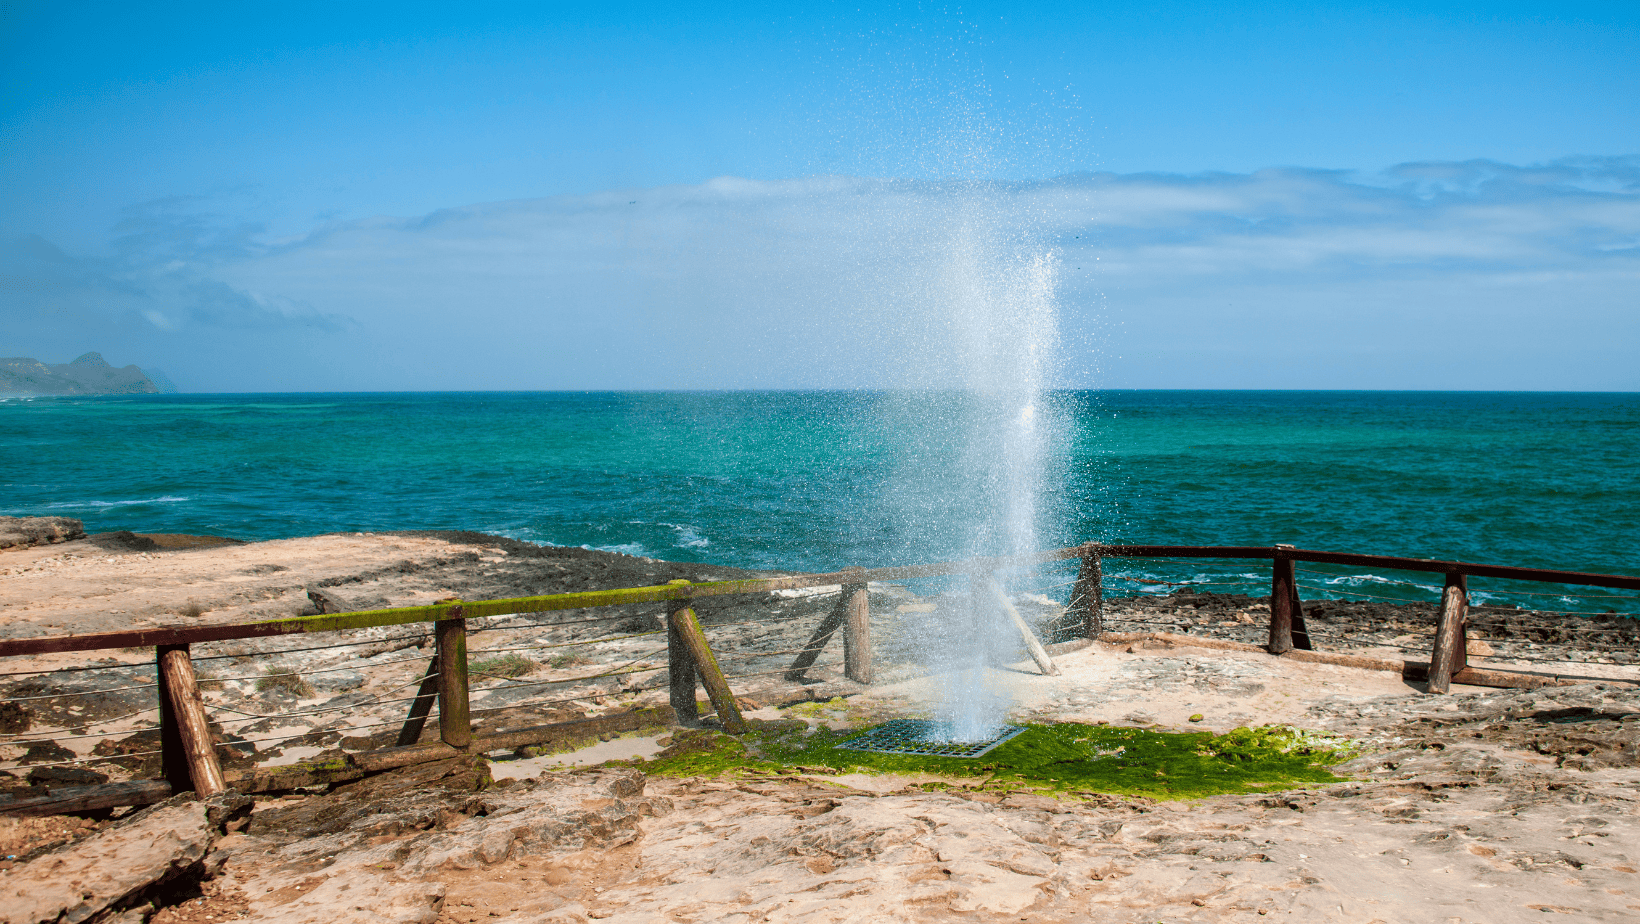 The natural blowhole at Al Mughsail Beach in Oman